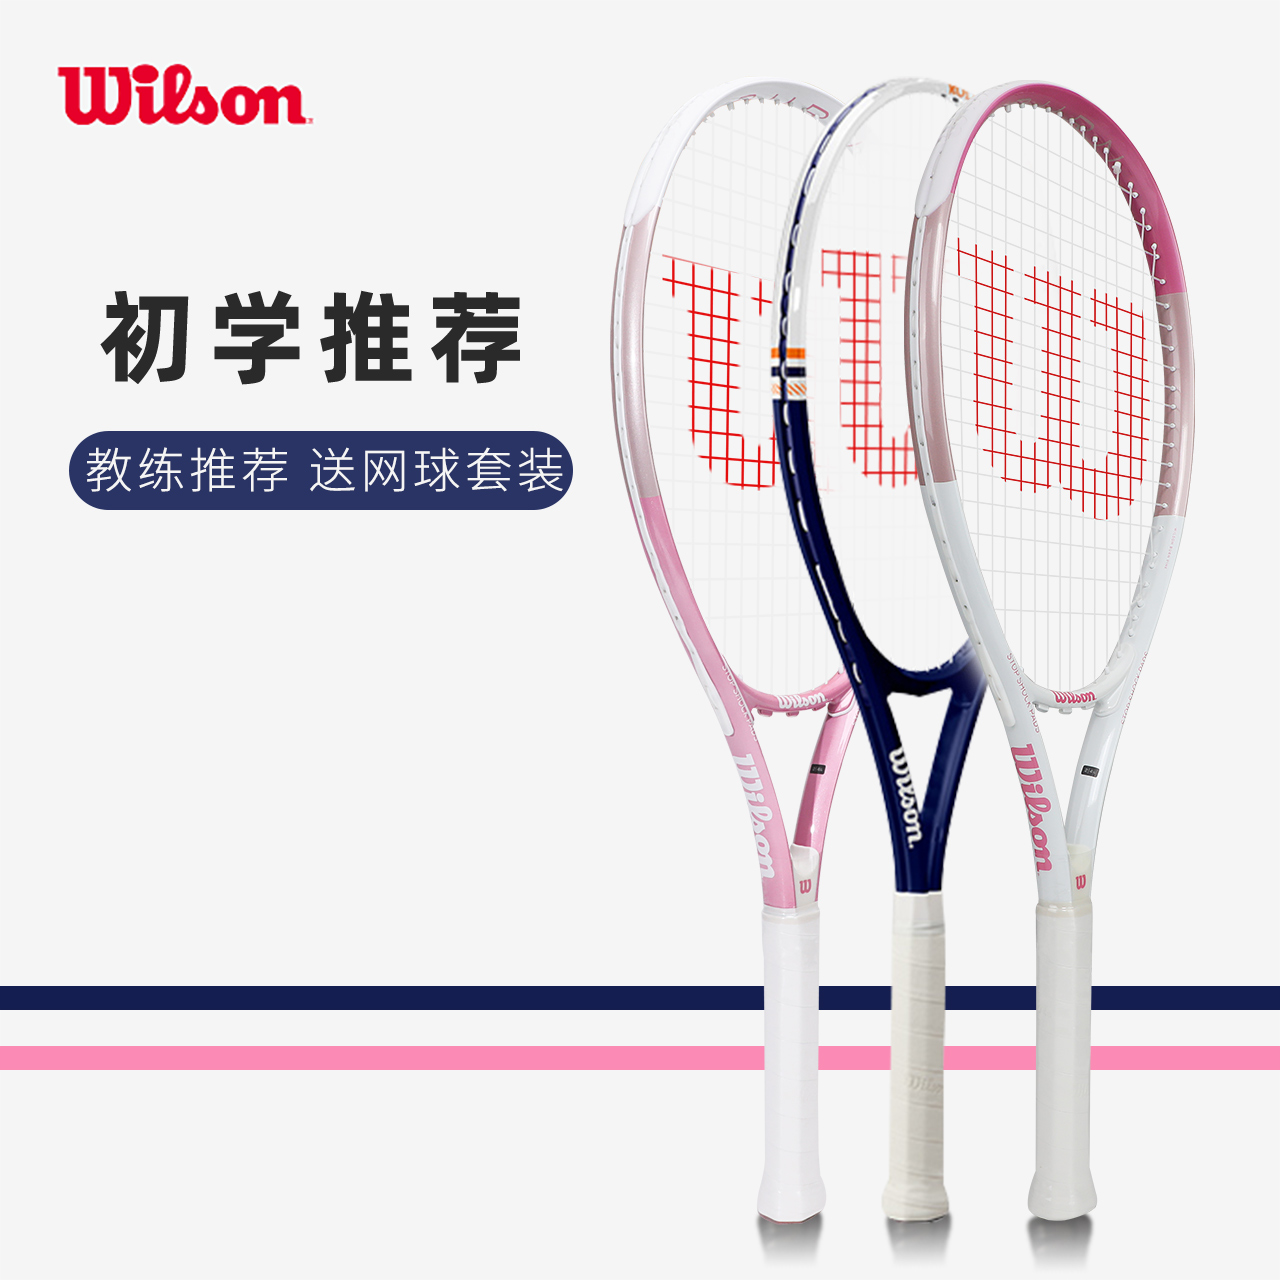 wilson威尔胜网球拍初学者女男威尔逊专业单人带线回弹训练器装备